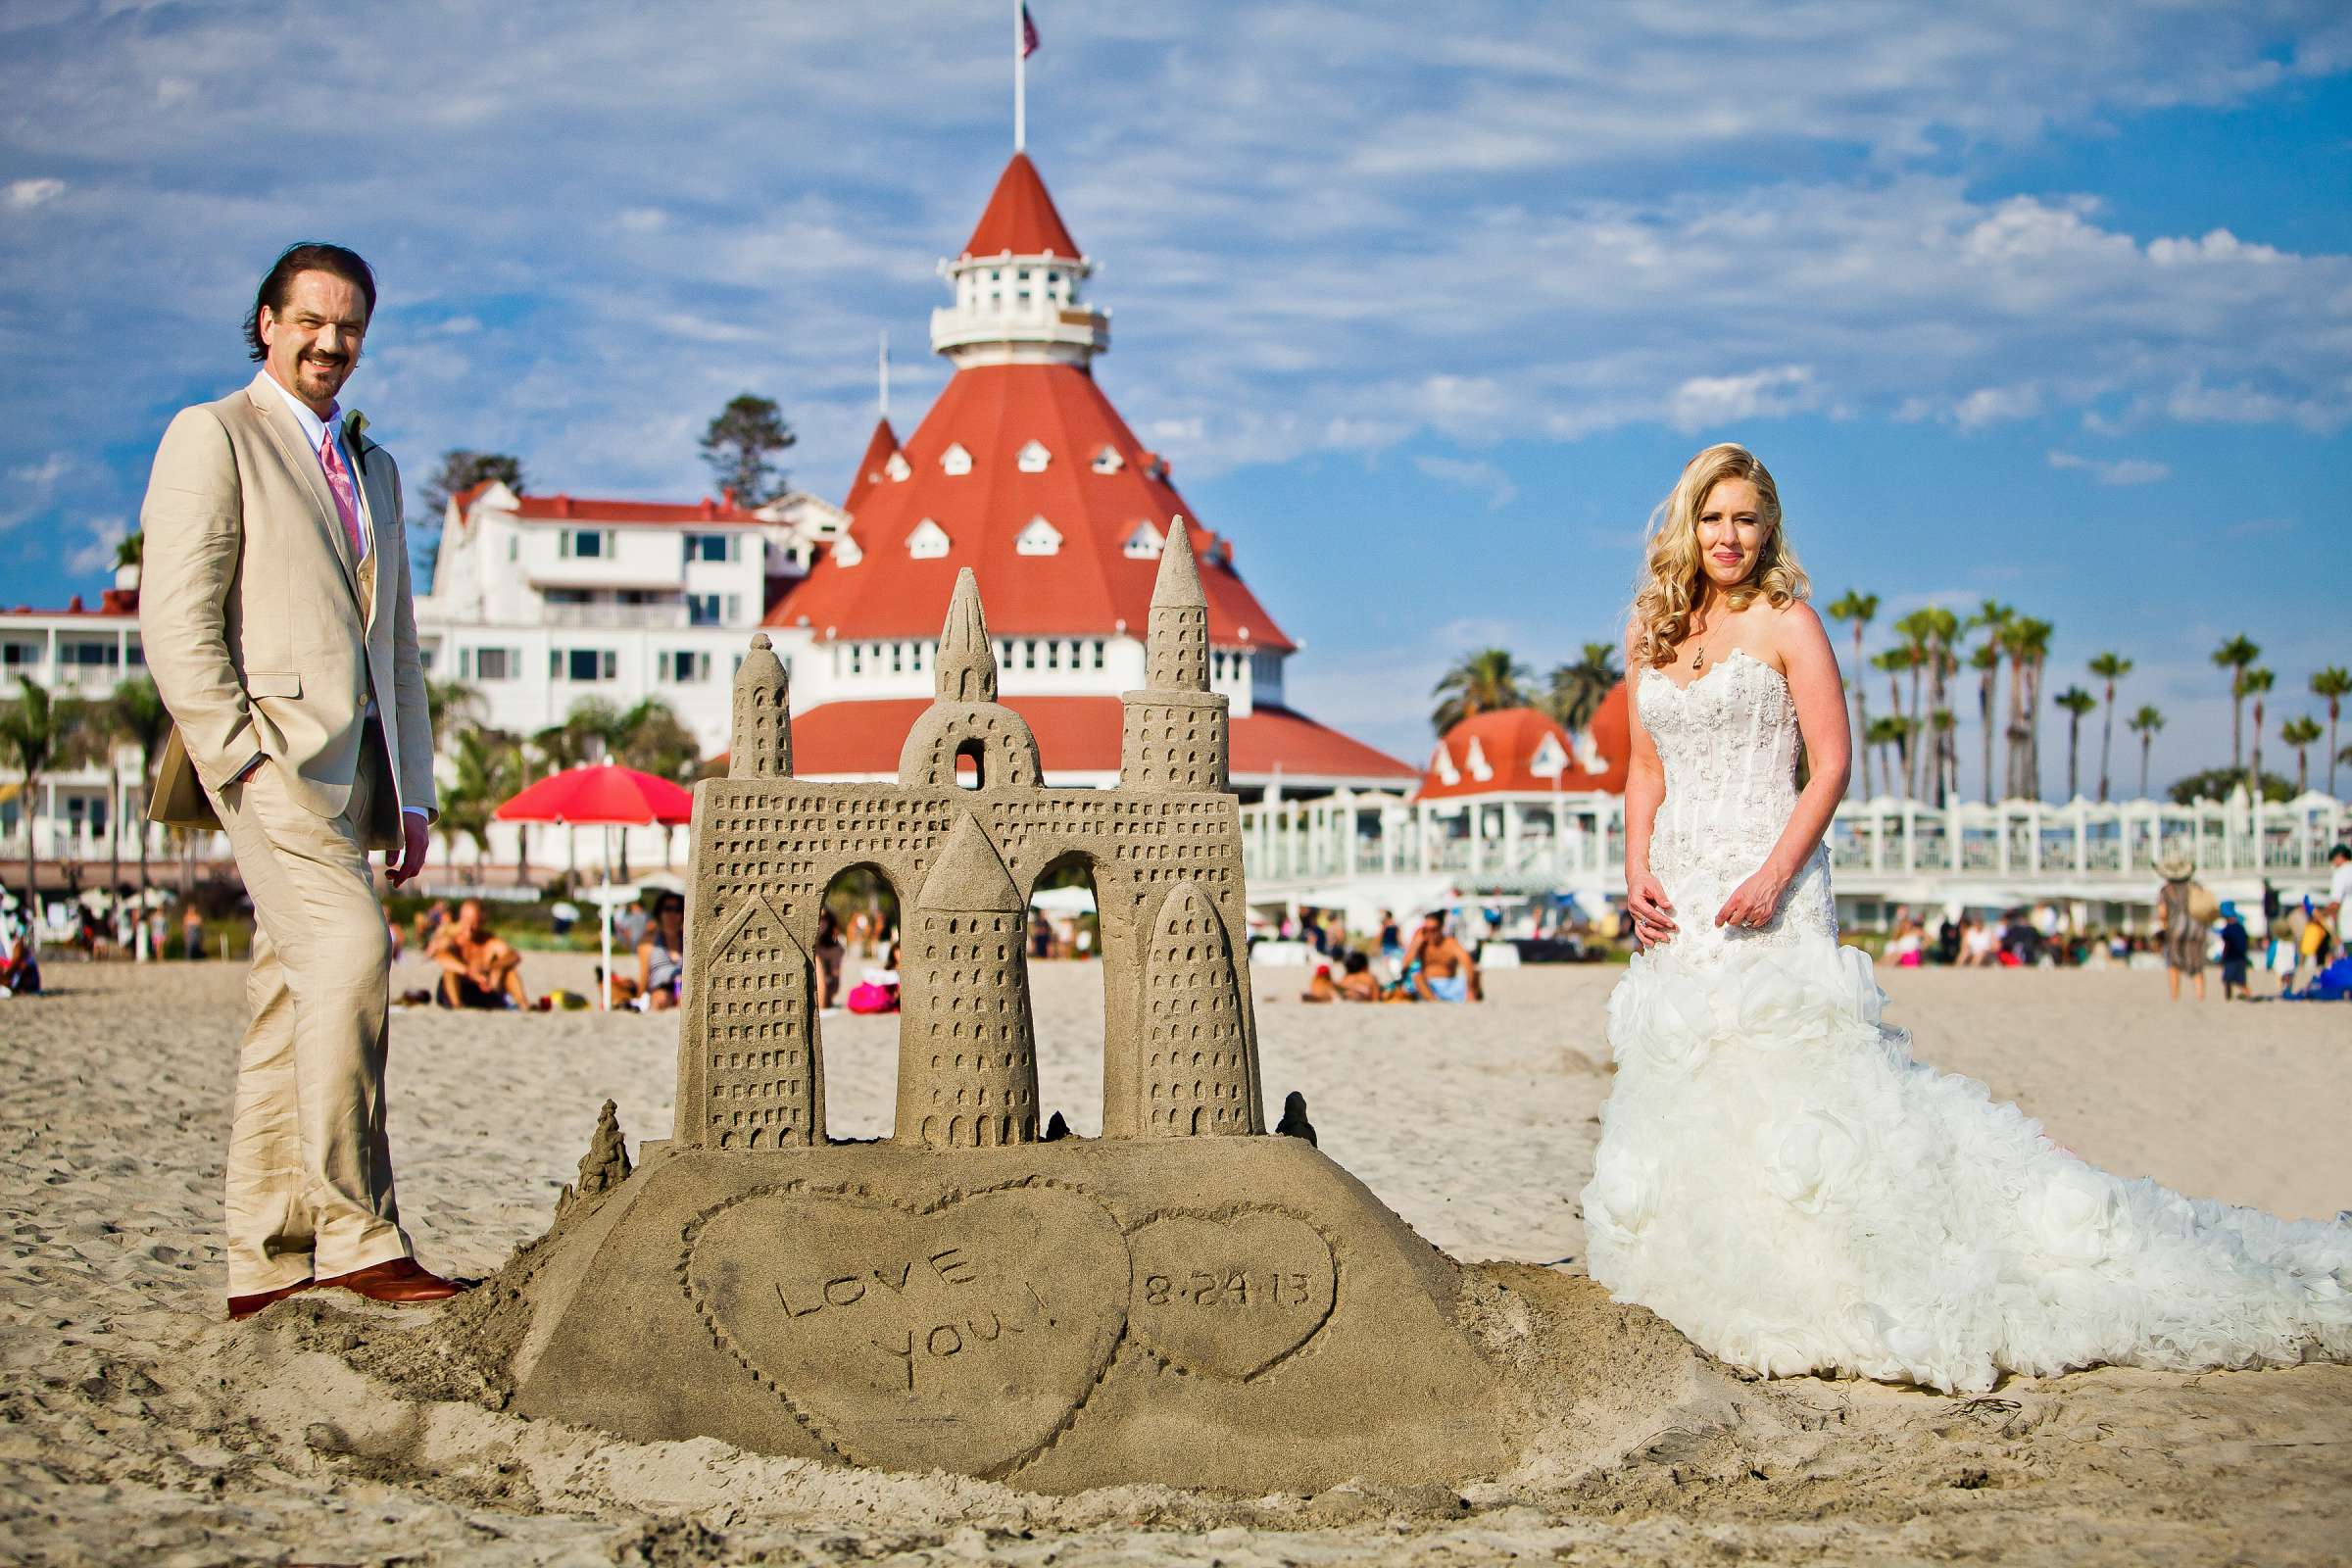 Hotel Del Coronado Wedding, Sarah and Tony Wedding Photo #323714 by True Photography